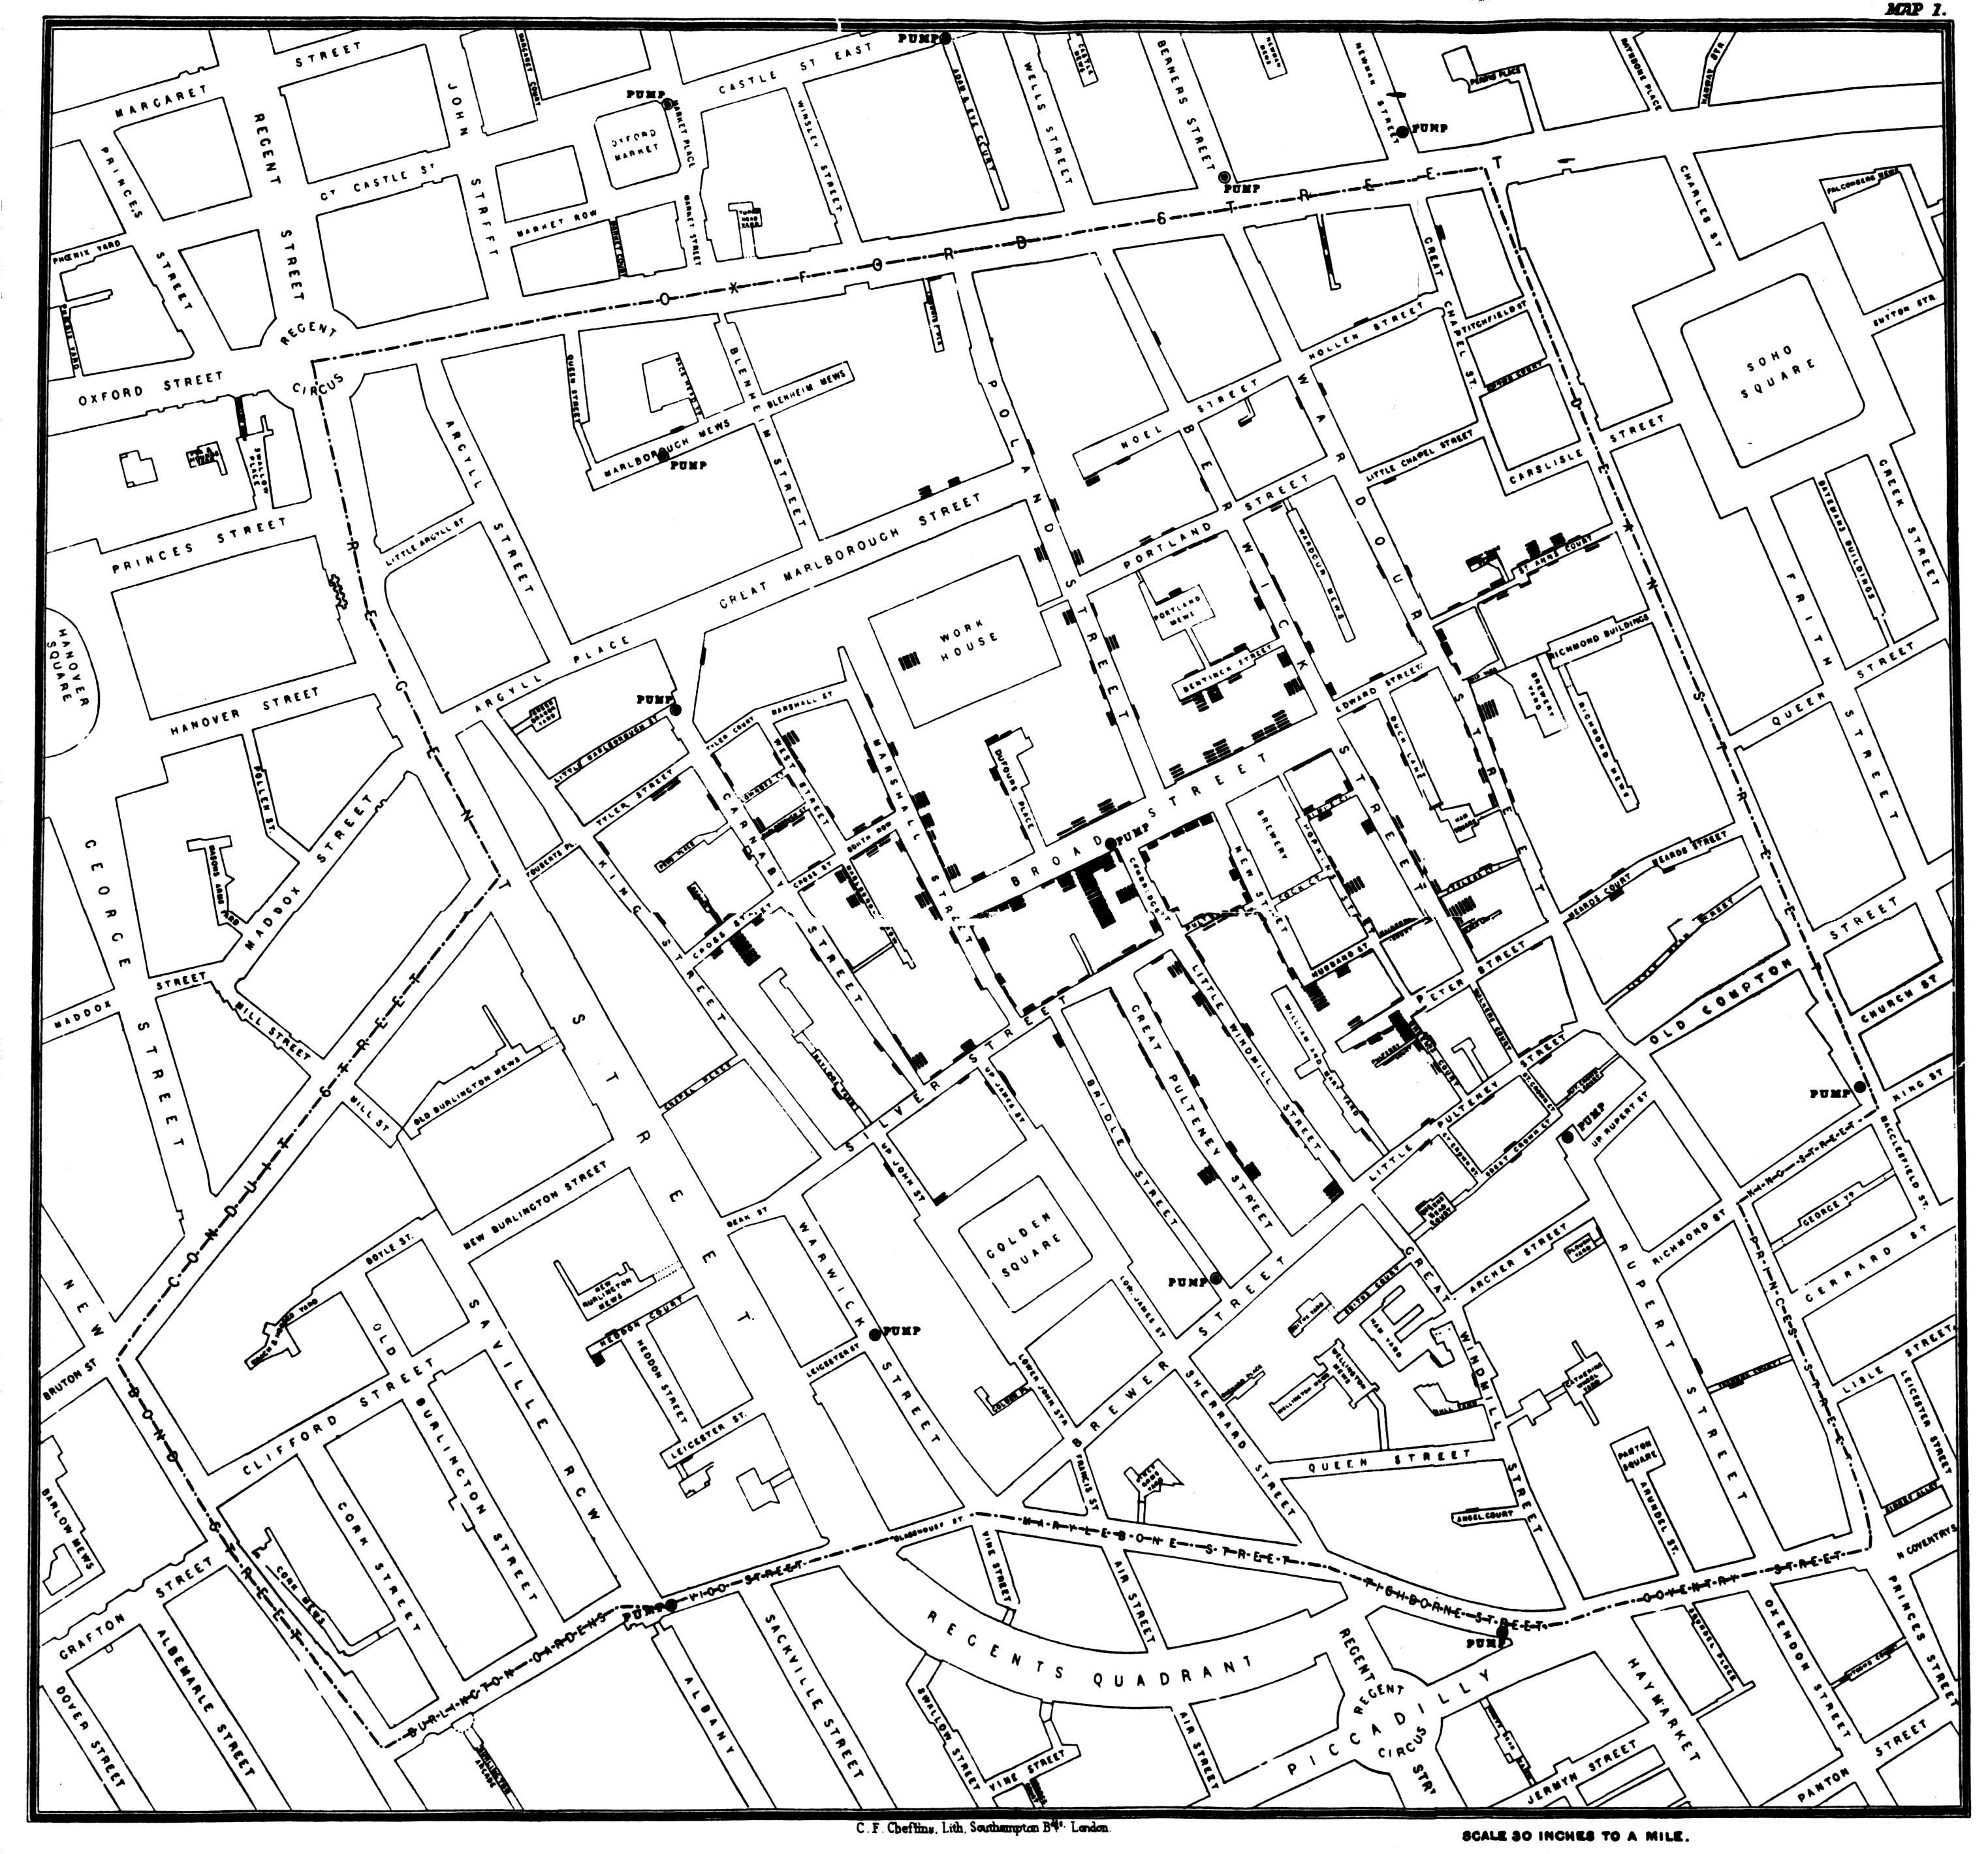 A londoni kolerajárvány haláleseteinek térbeli ábrázolása, és az ivóvíz-kutak helyzete (J. Snow térképe)